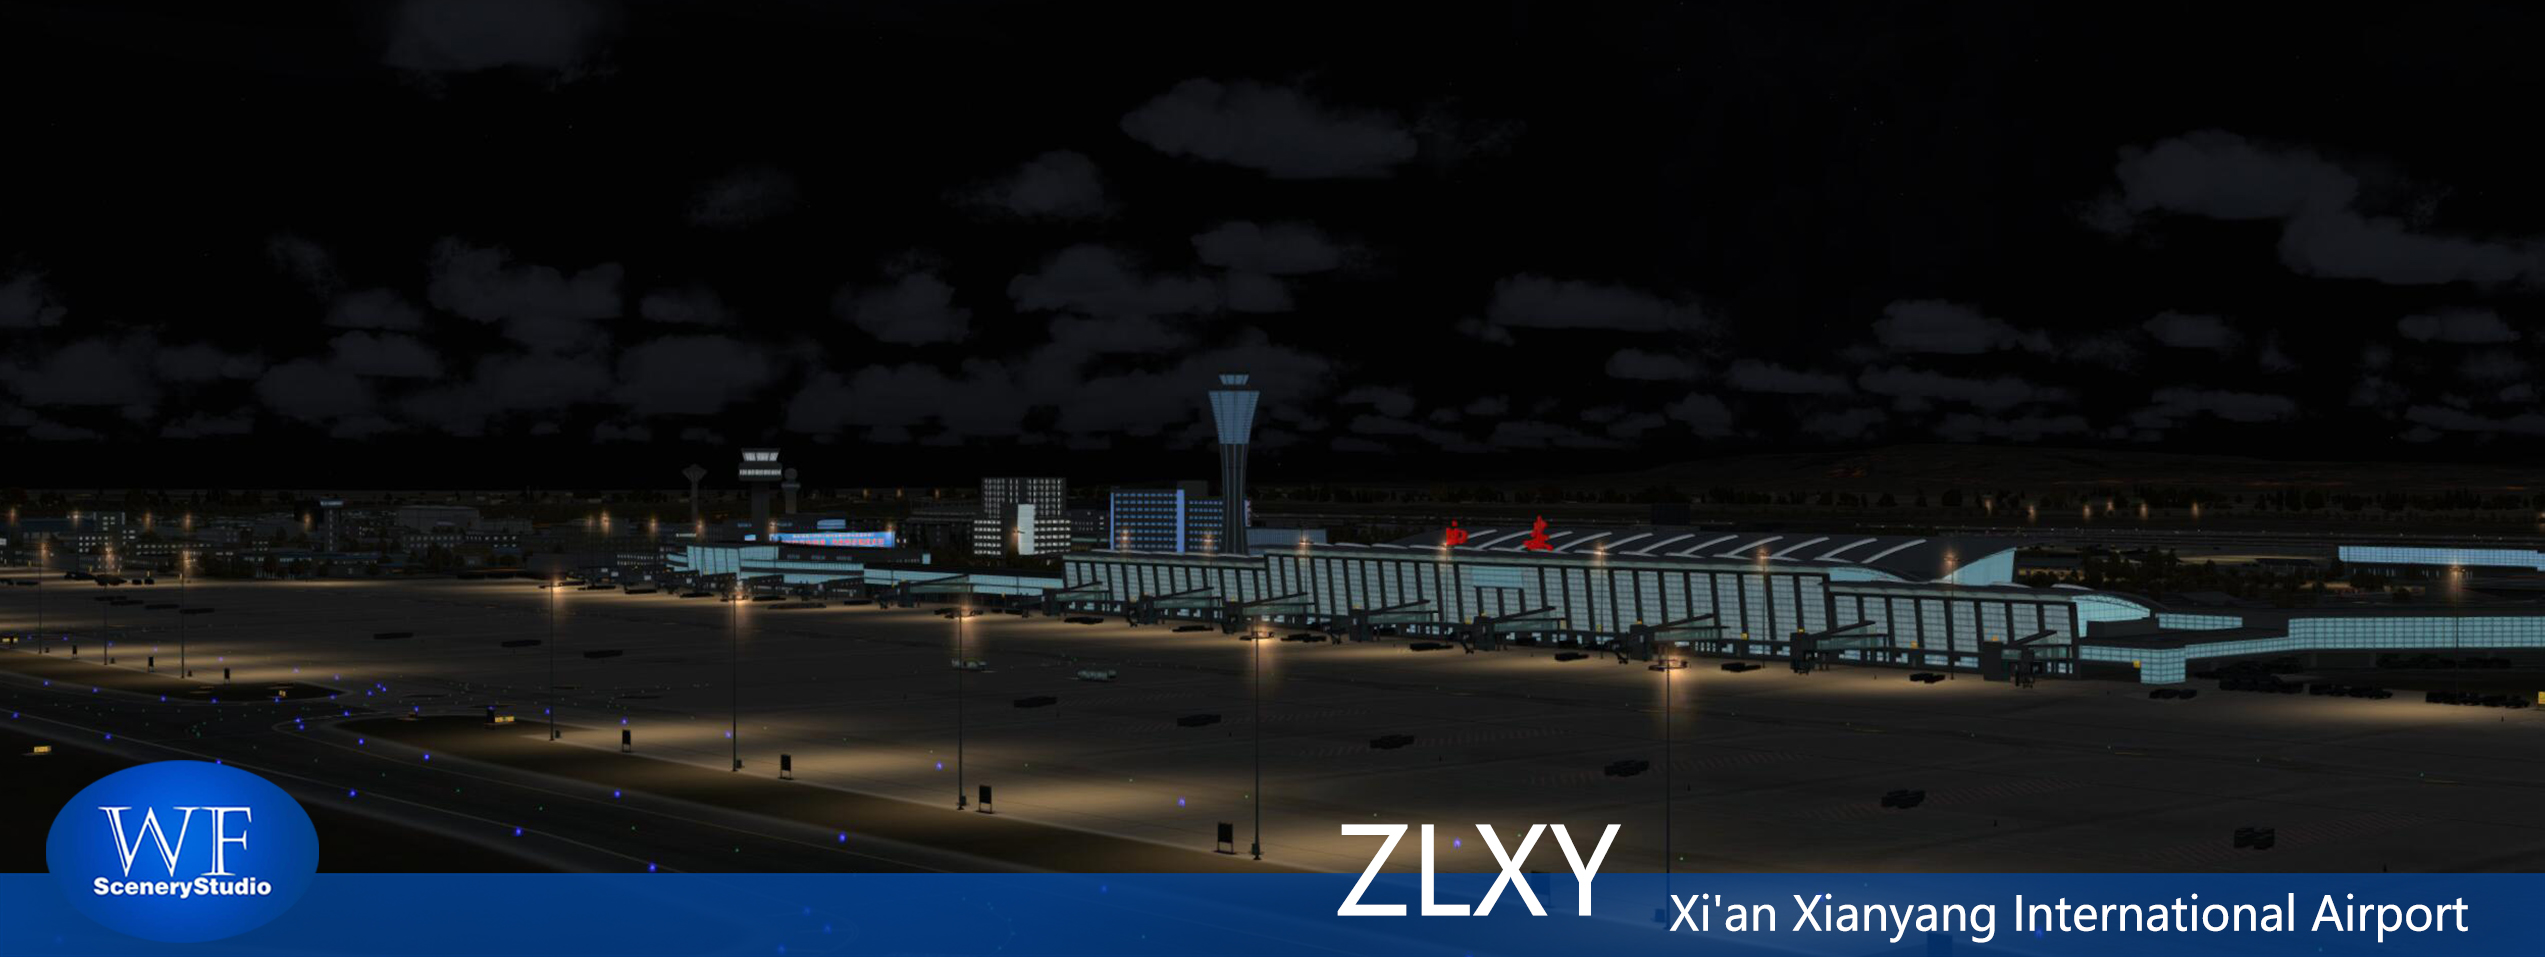 西安咸阳国际机场FSX和P3DV3 版本发布-6761 